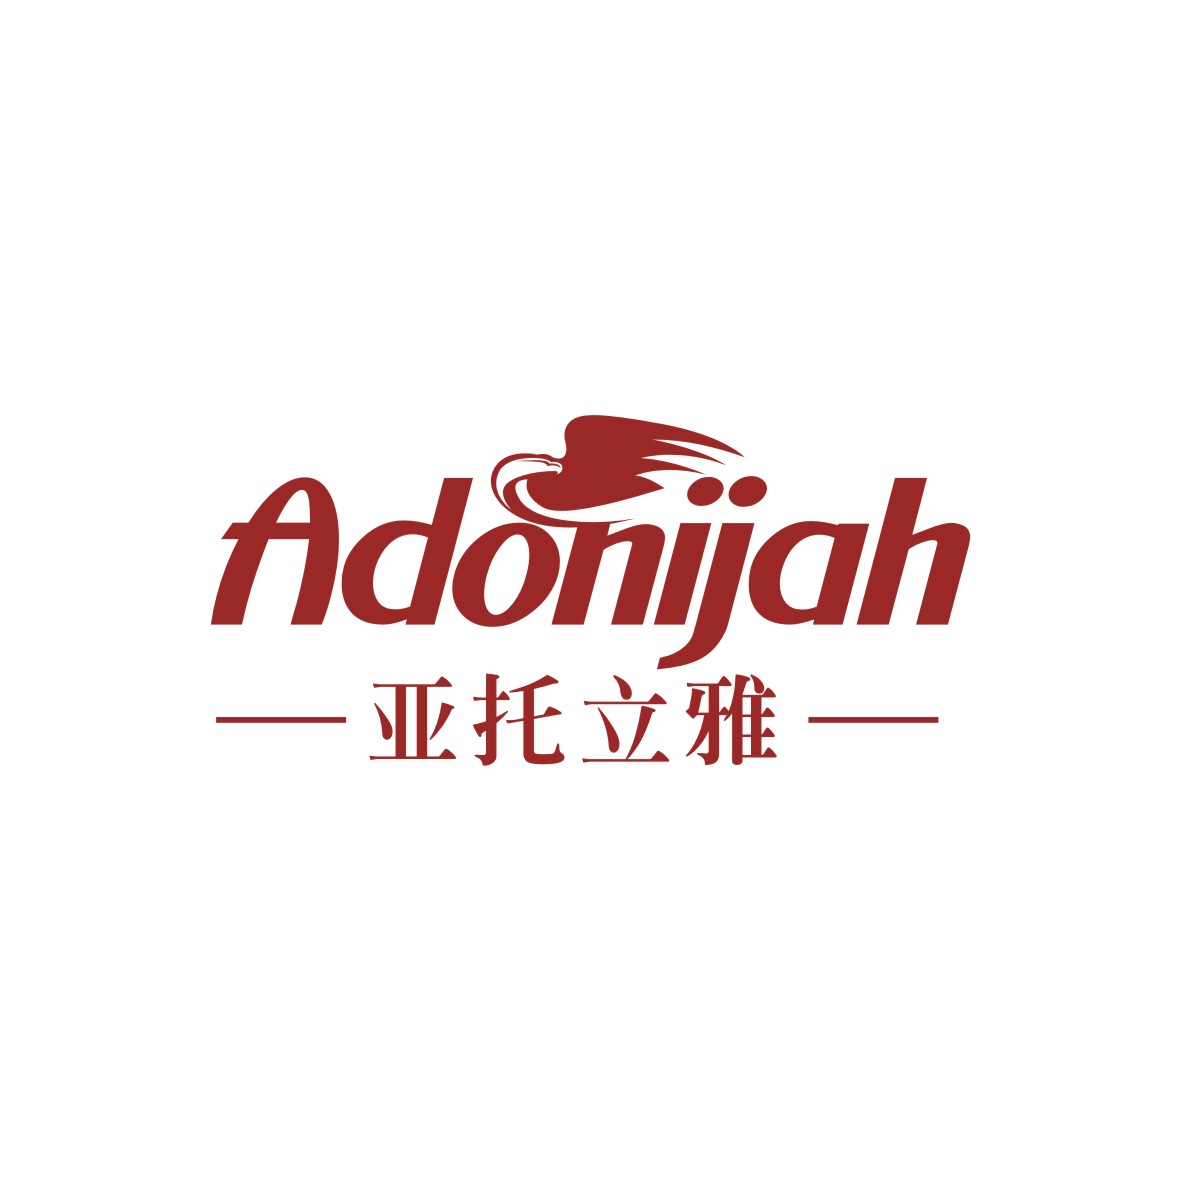 广州品翰文化发展有限公司商标亚托立雅 ADONIJAH（18类）多少钱？